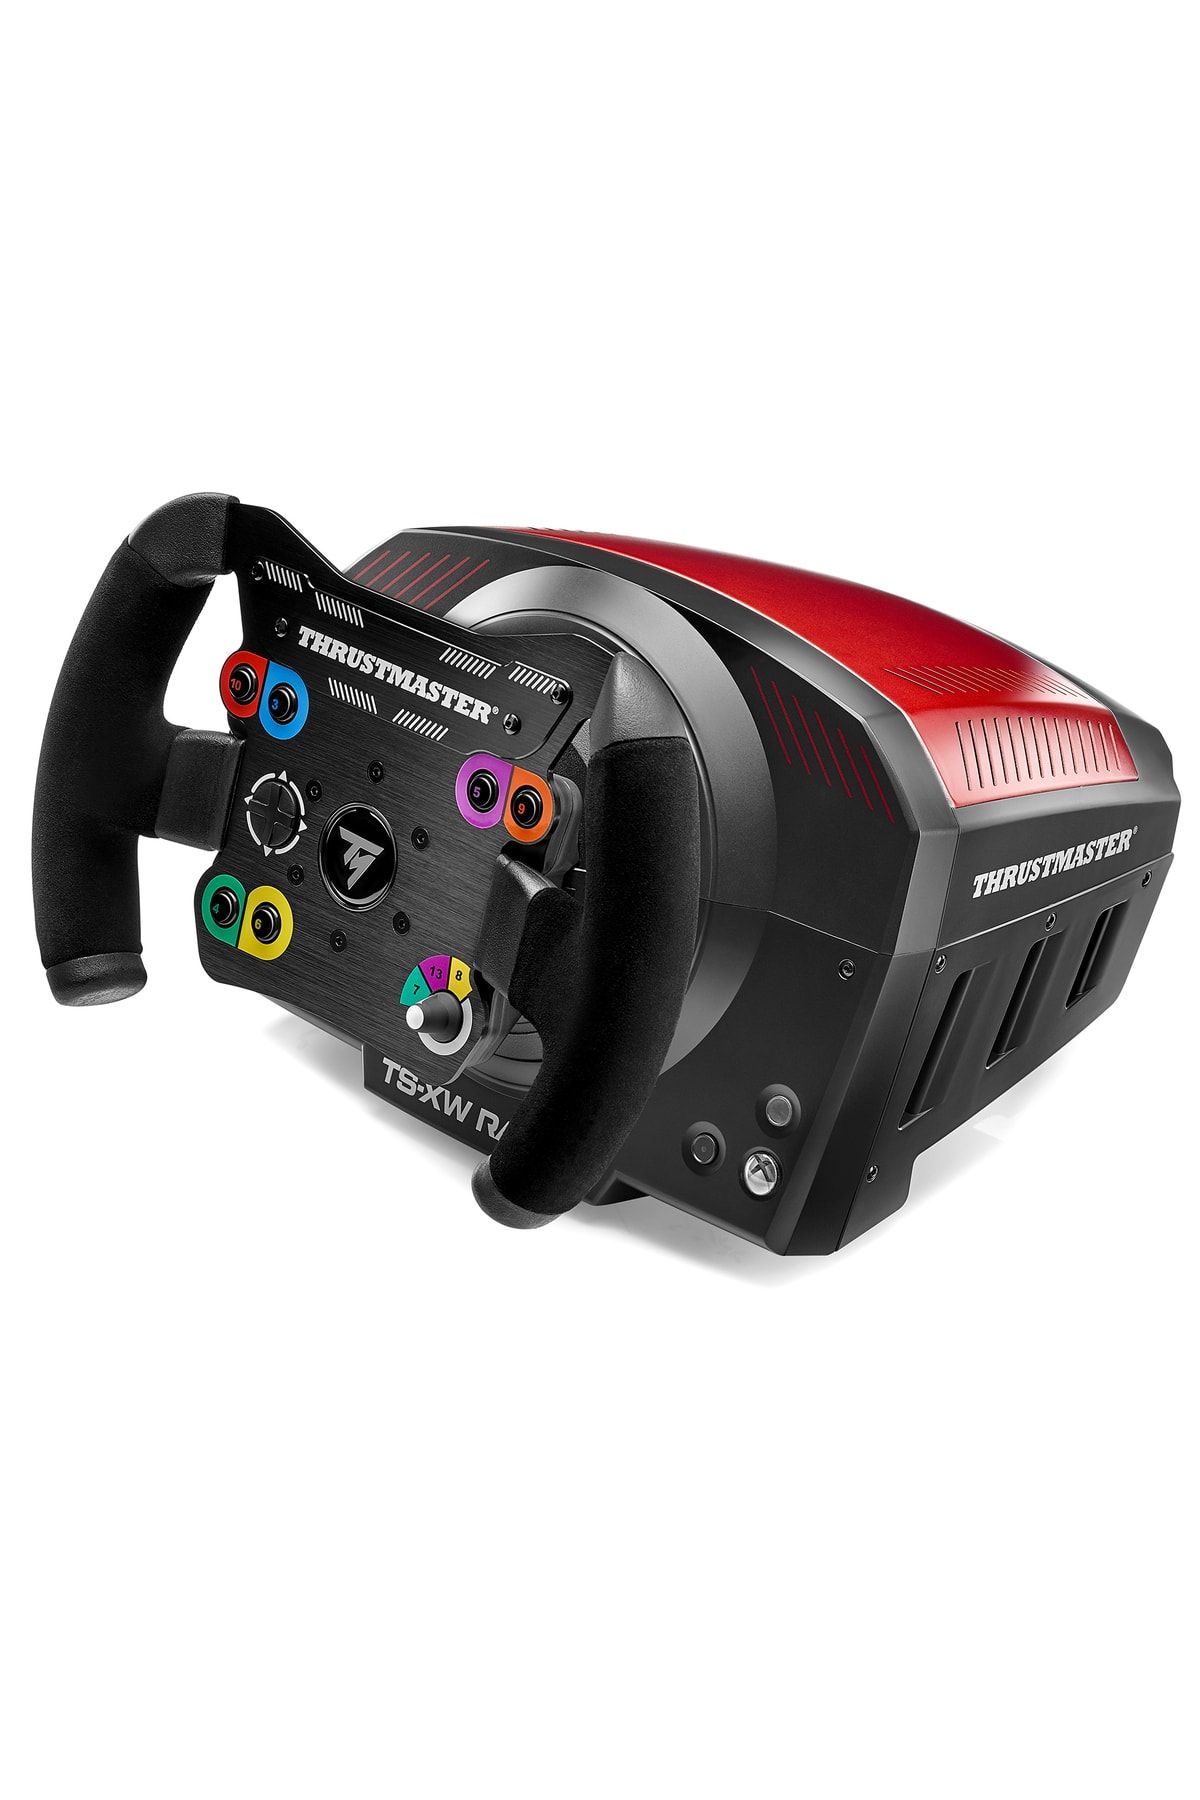 Thrustmaster TS-XW Racer スラストマスター - ゲームソフト/ゲーム機本体